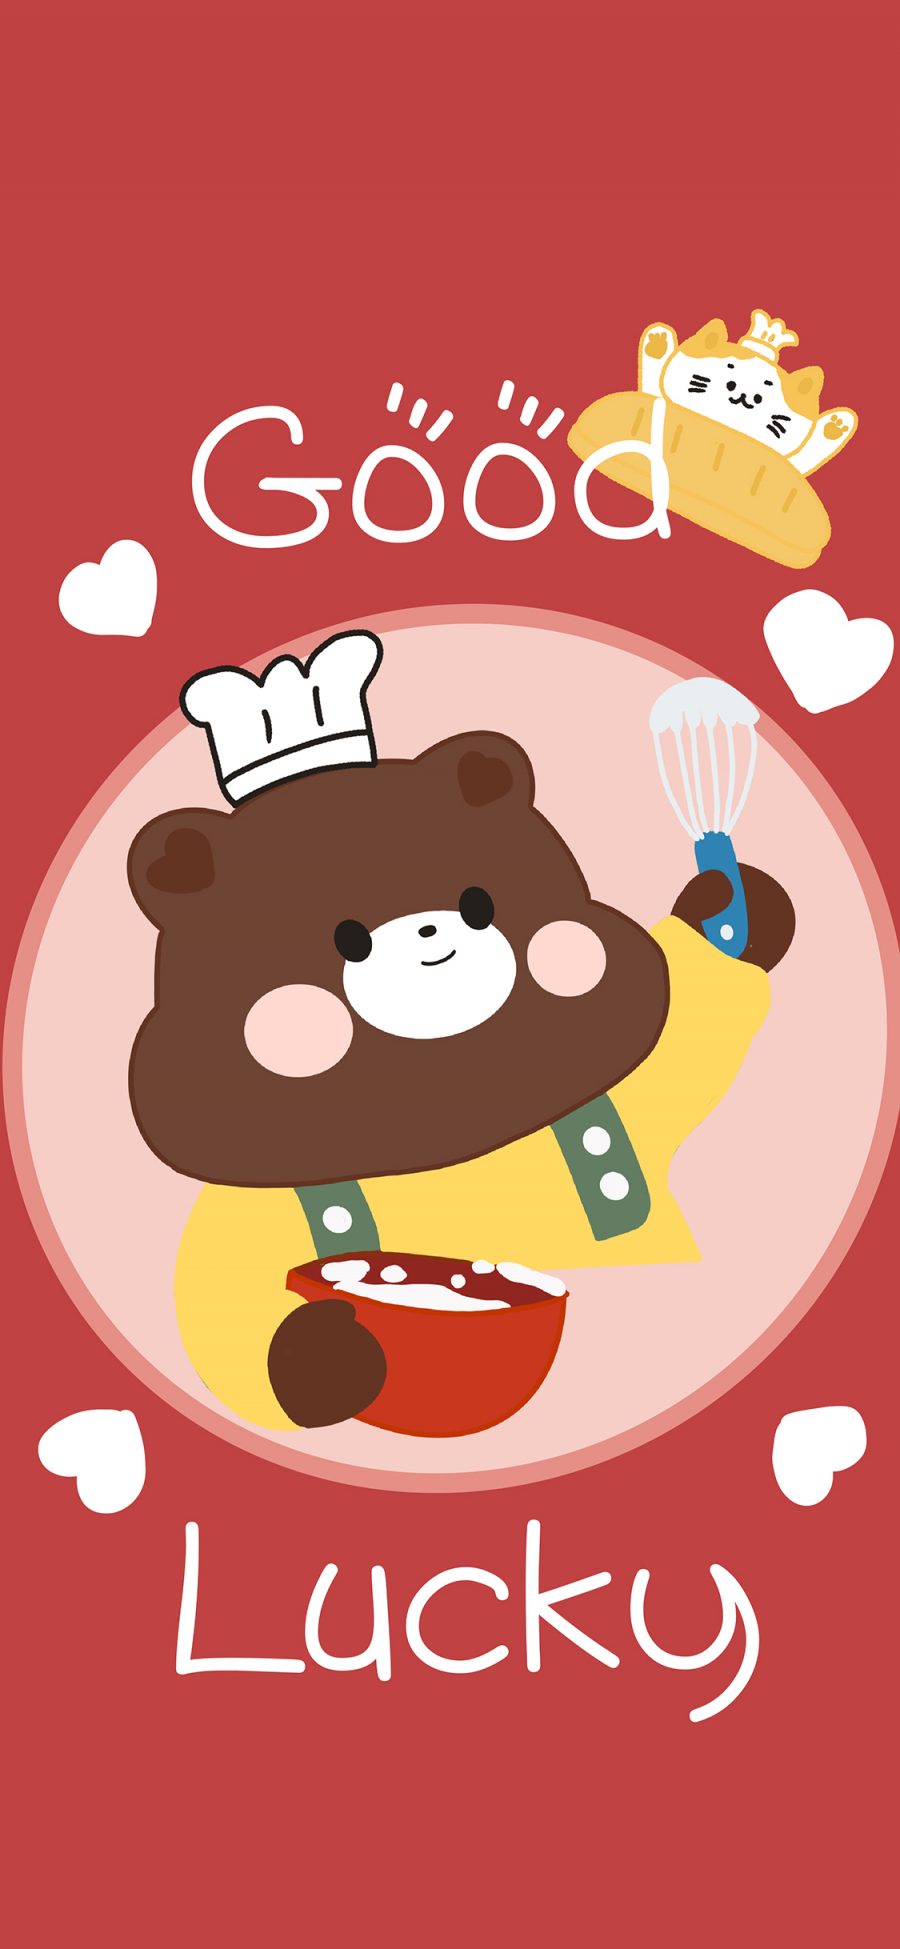 [2436×1125]卡通 good lucky 小熊 可爱 苹果手机动漫壁纸图片